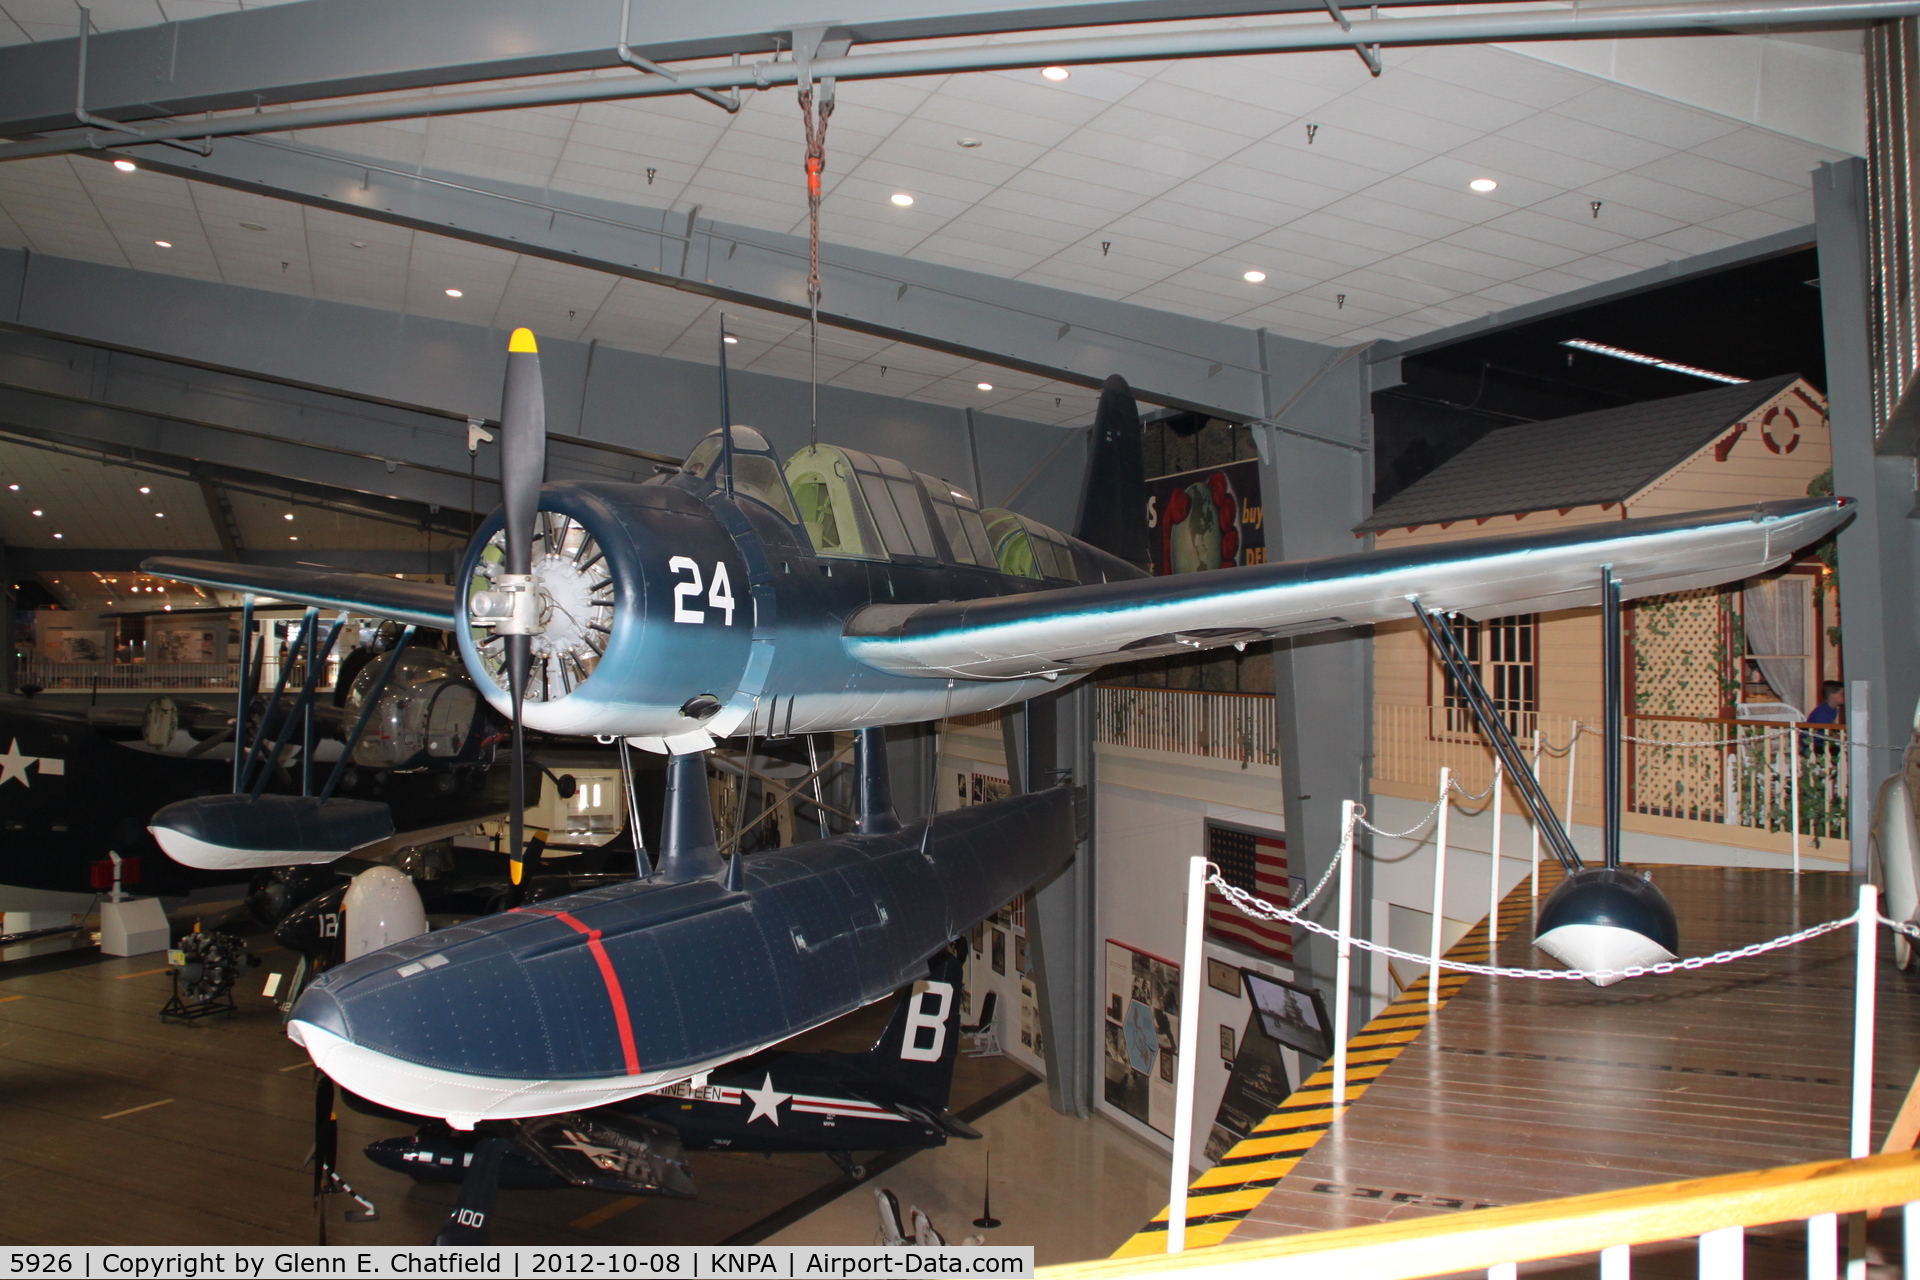 5926, 1942 Vought OS2U-3 Kingfisher C/N A-752, Battleship Alabama Memorial Museum